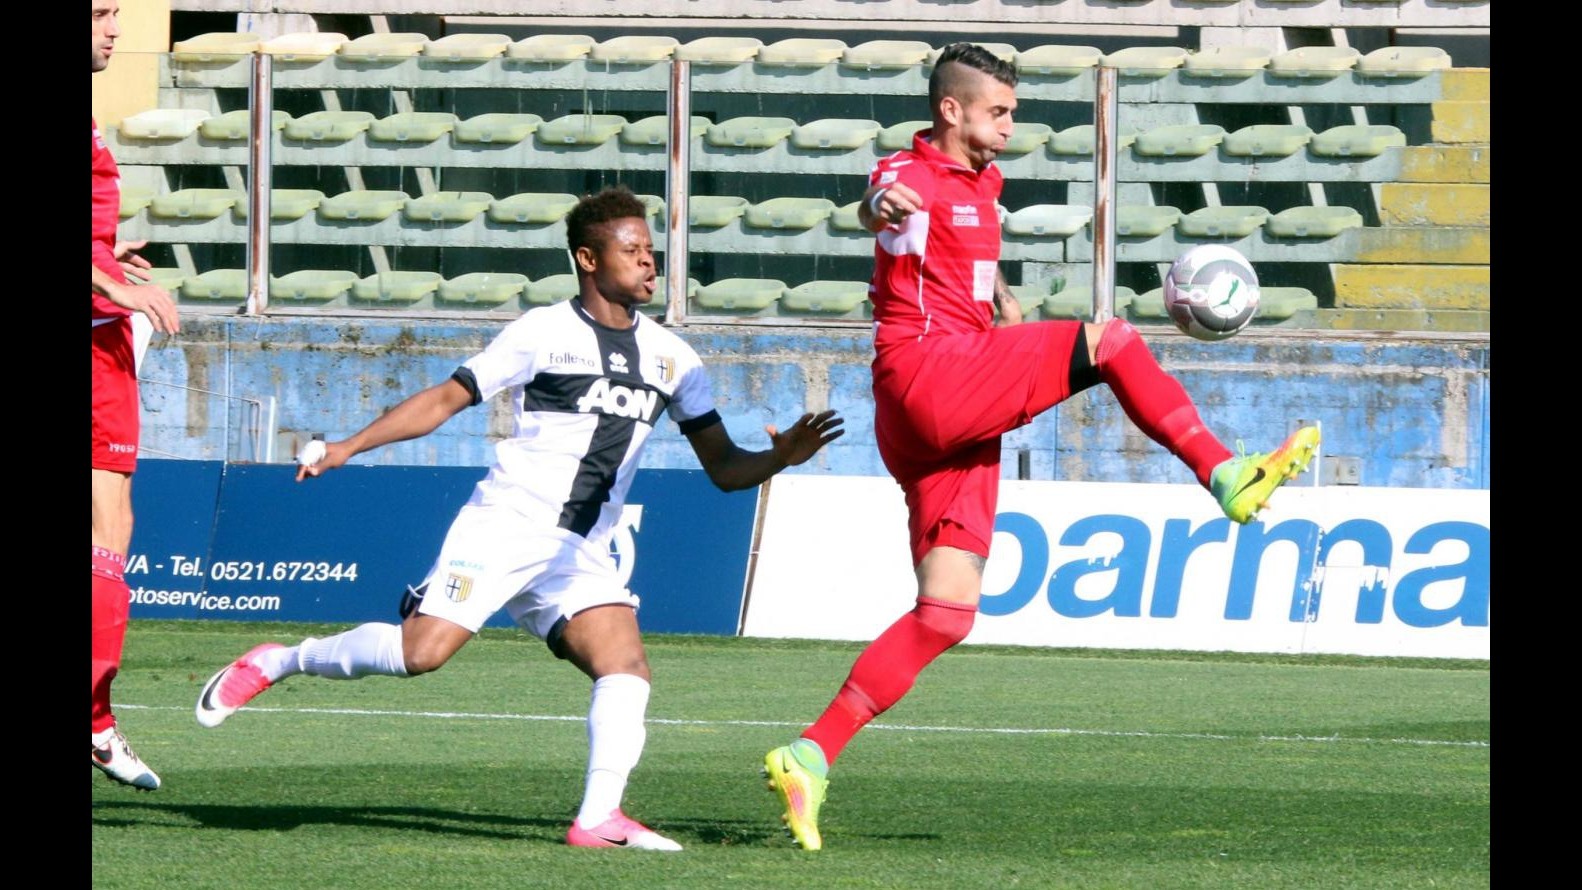 FOTO Lega Pro, l’Ancona supera il Parma fuori casa 2-0